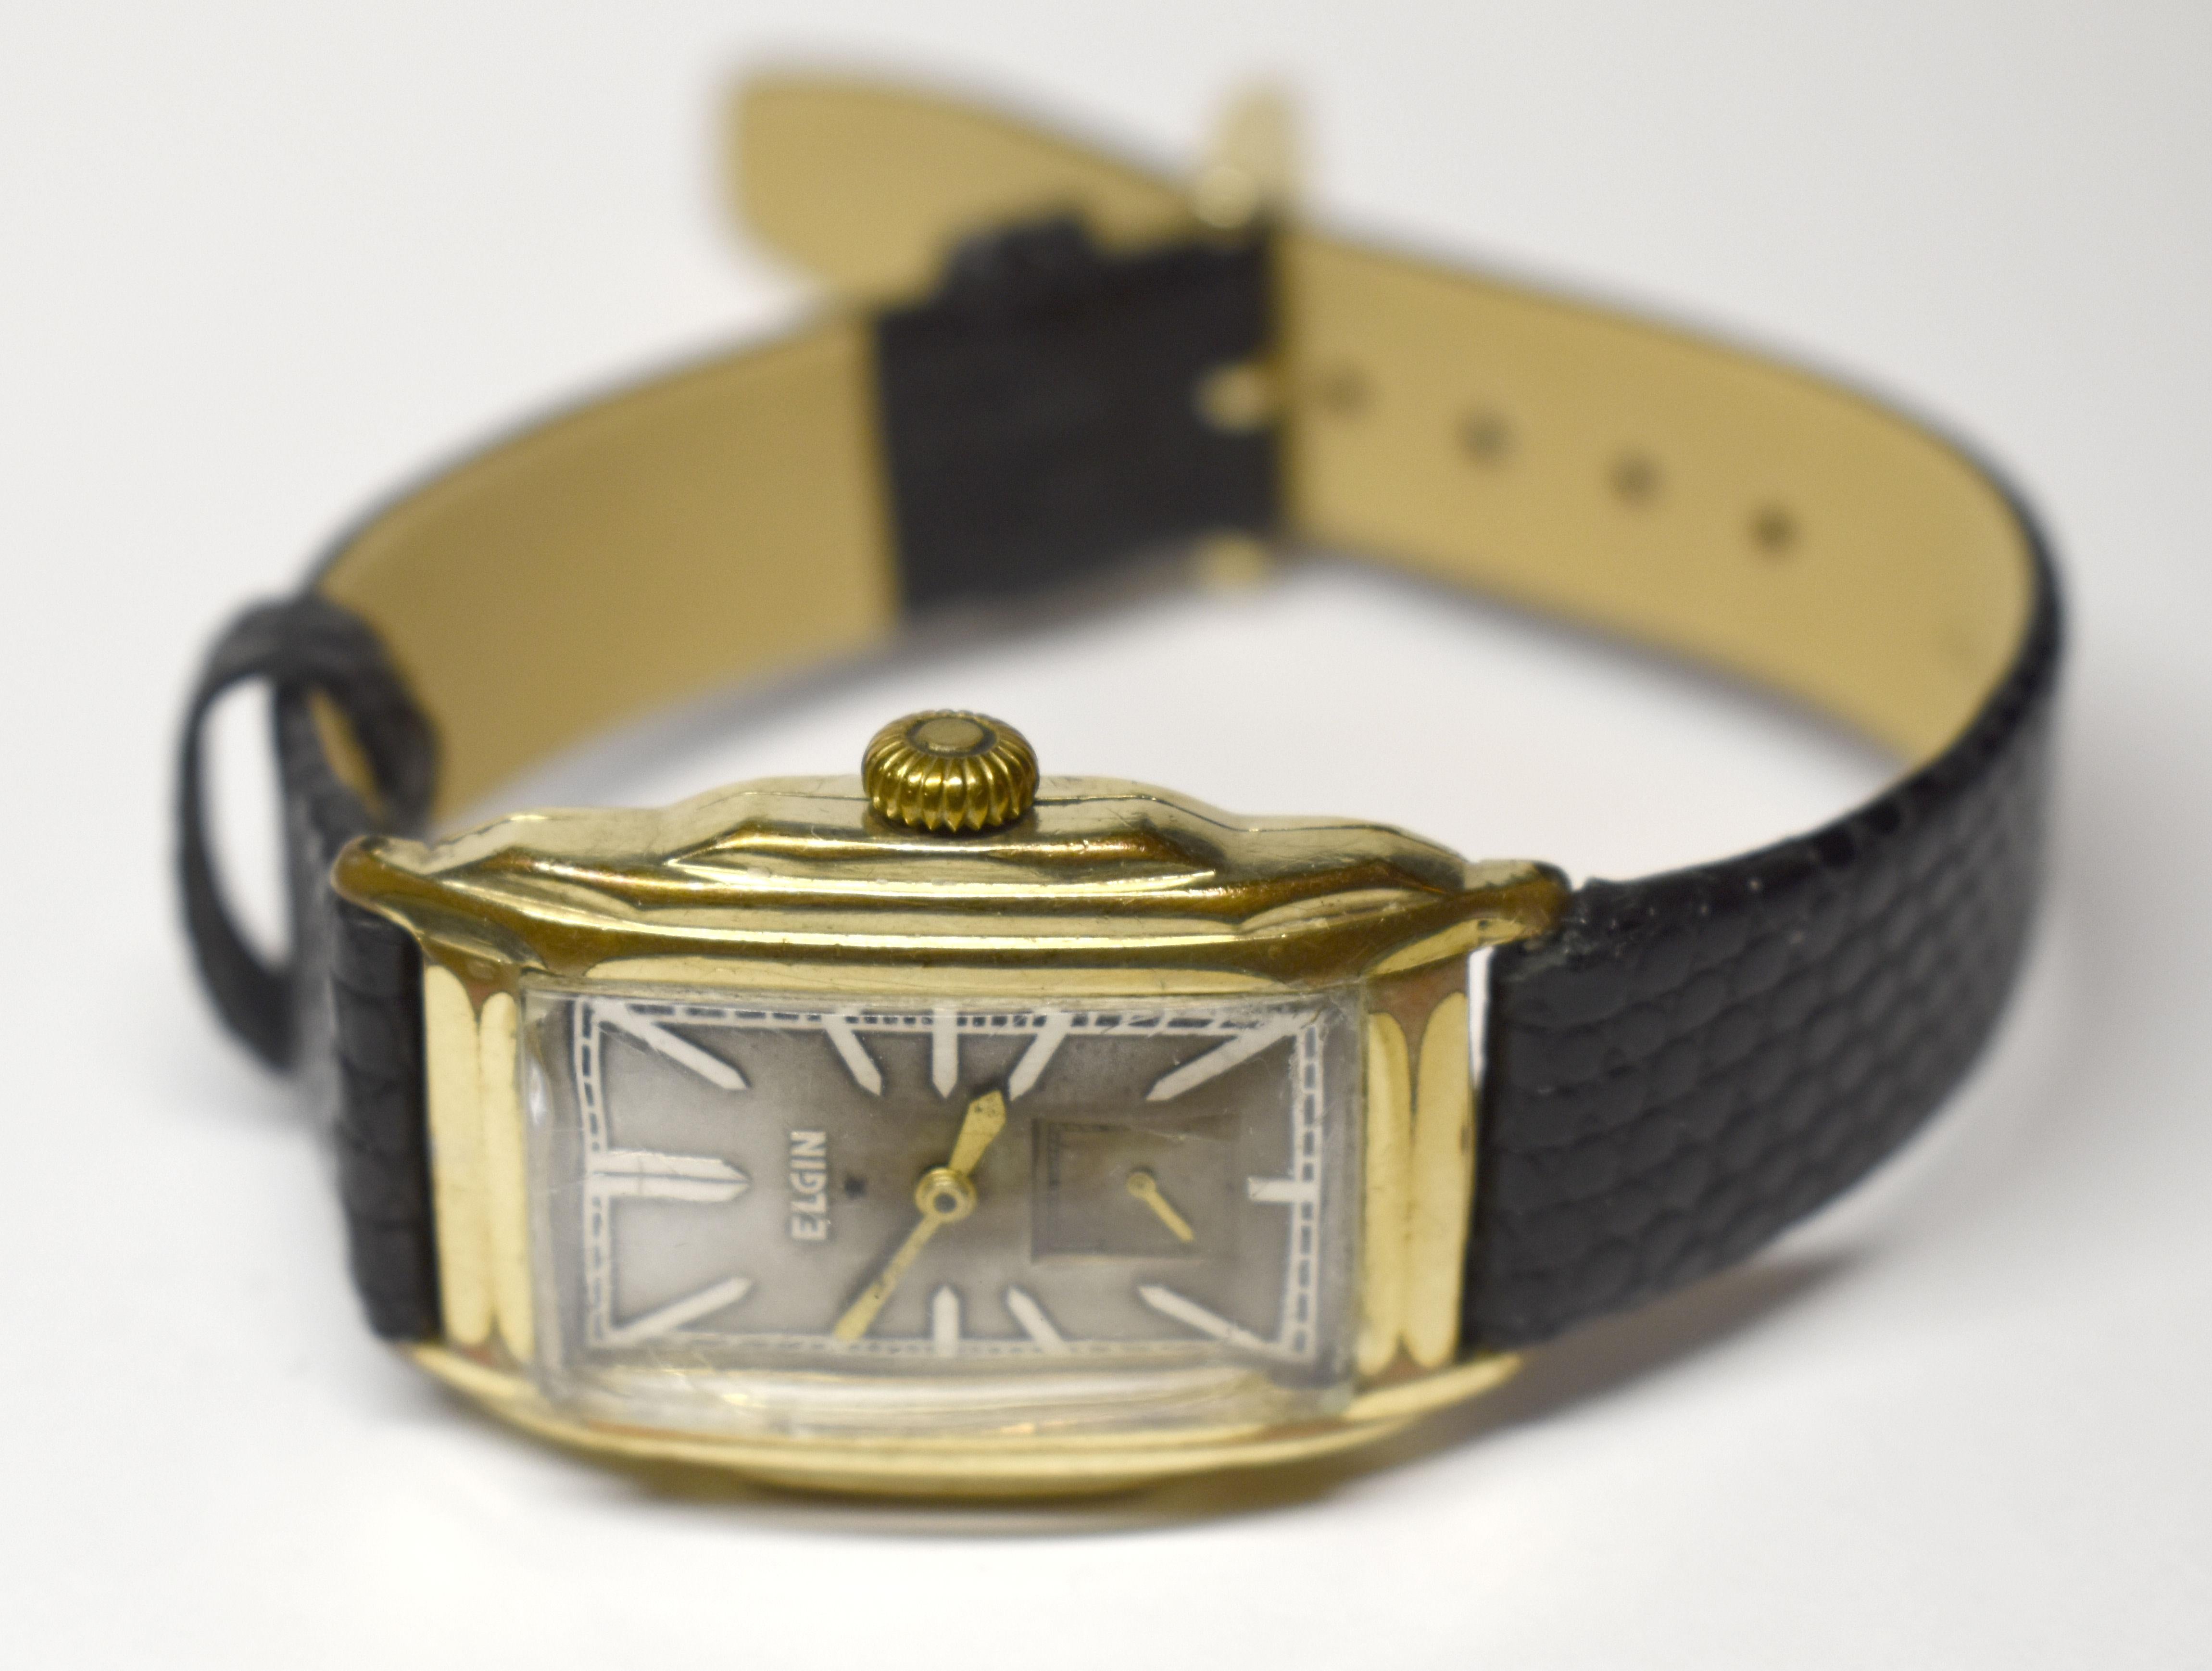 lexington 1940s watch